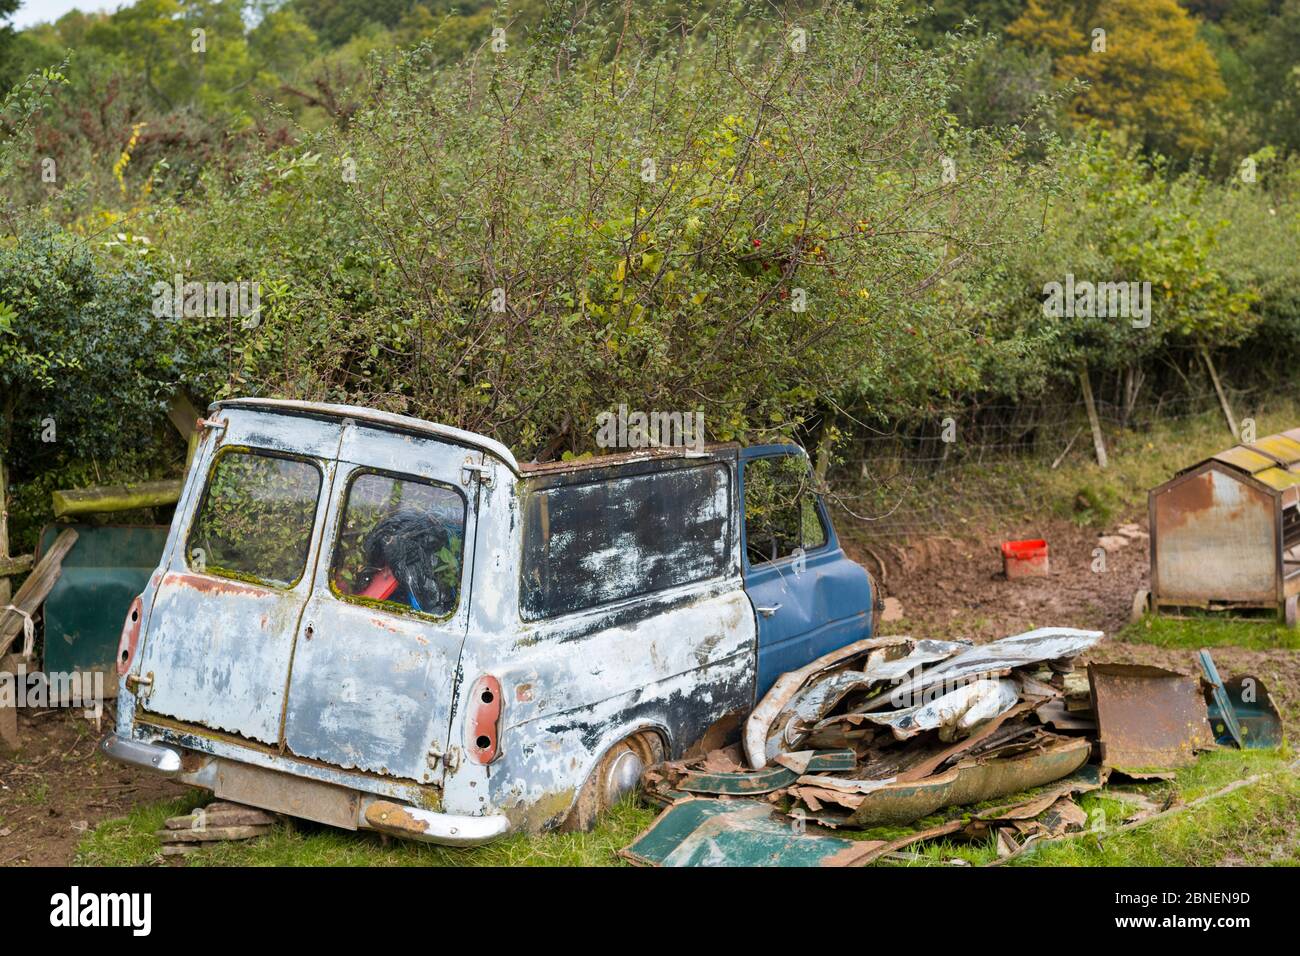 Una antigua furgoneta oxidada abandonada con un árbol que crece en una granja en Herefordshire, Reino Unido Foto de stock